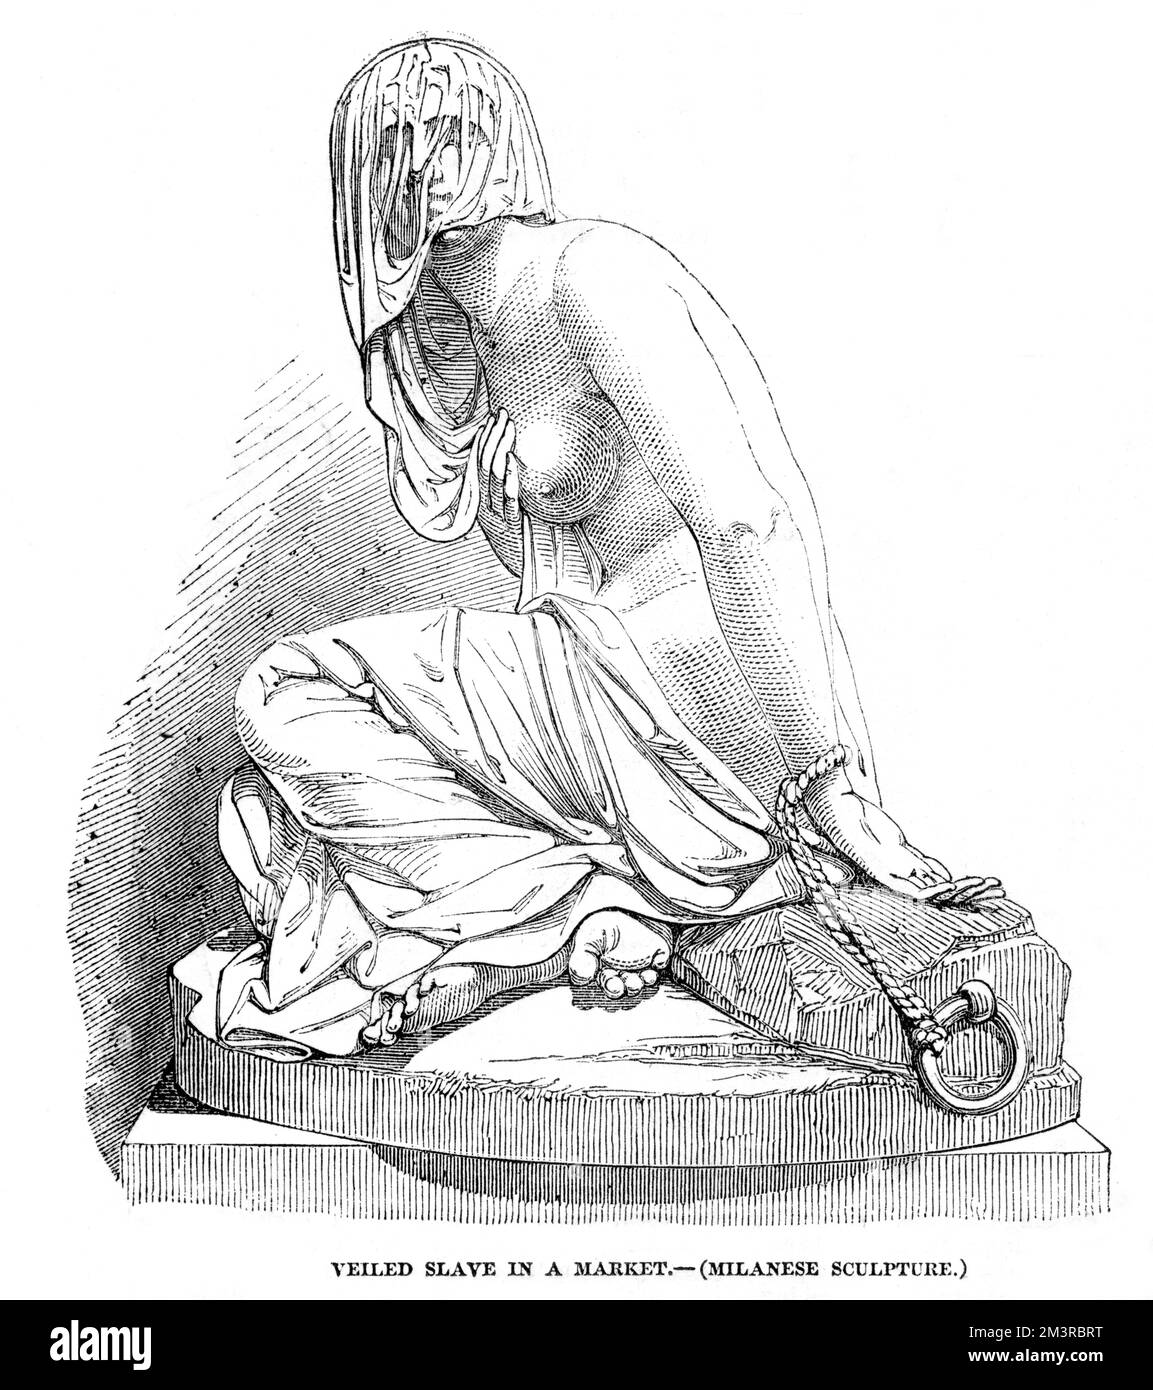 Il Circassio veilò schiavo nel mercato degli schiavi a Costantinopoli, una scultura di R Monti, esposta alla Grande Mostra, Palazzo di Cristallo, 1851. Data: 1851 Foto Stock